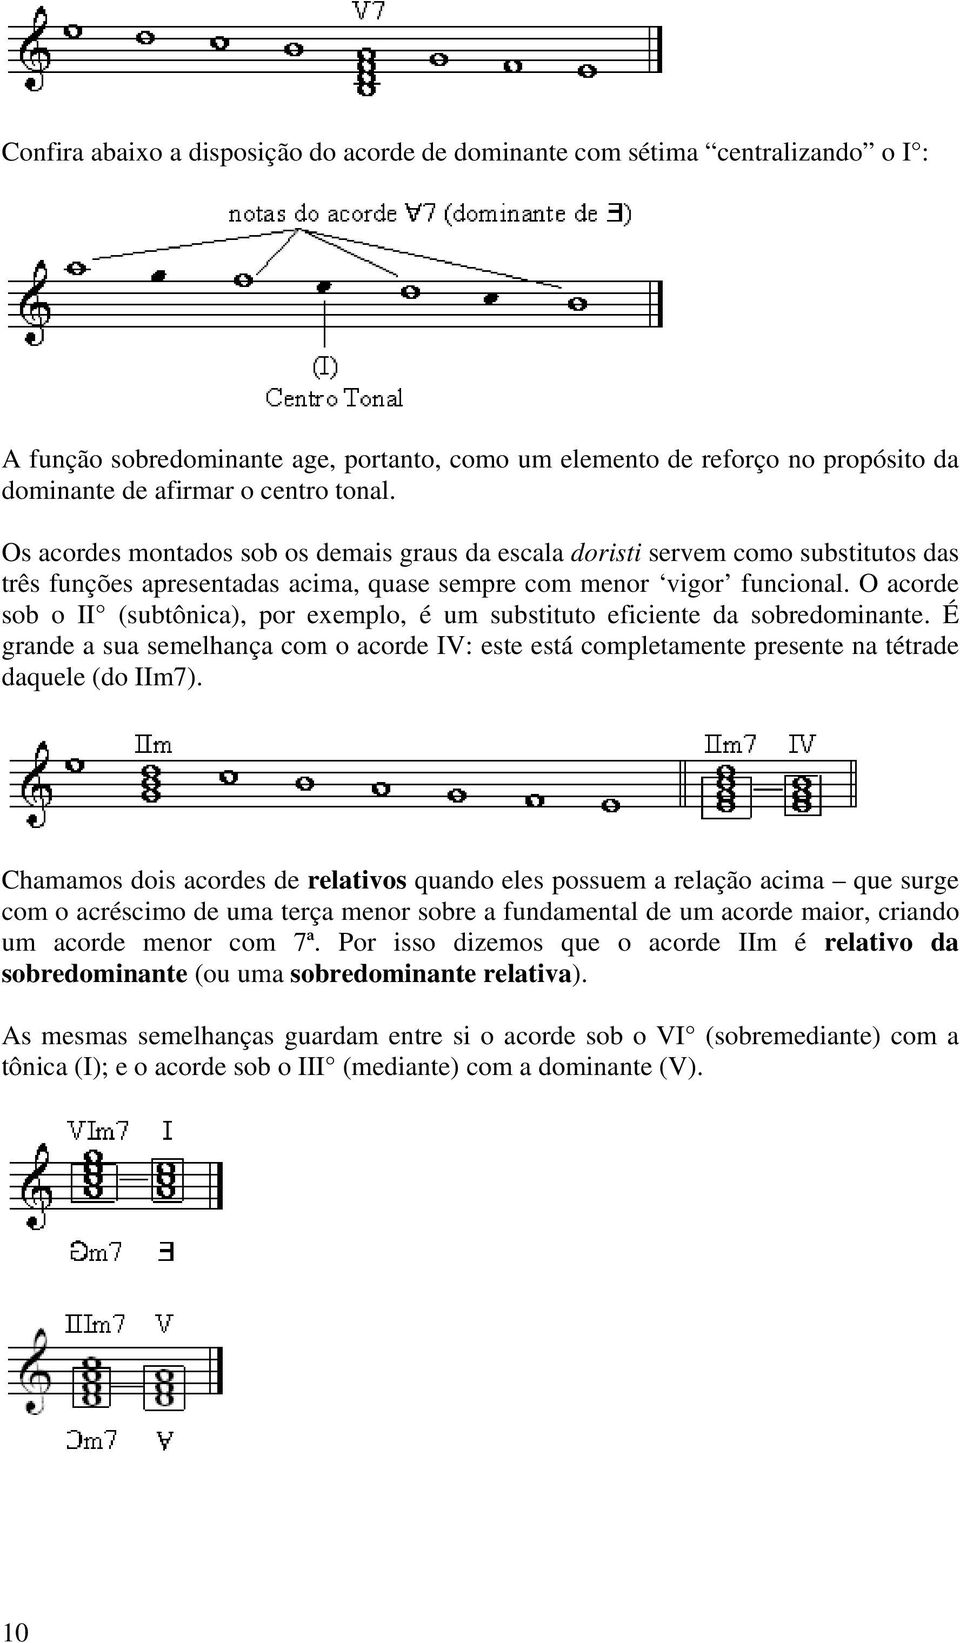 O acorde sob o II (subtônica), por exemplo, é um substituto eficiente da sobredominante. É grande a sua semelhança com o acorde IV: este está completamente presente na tétrade daquele (do IIm7).